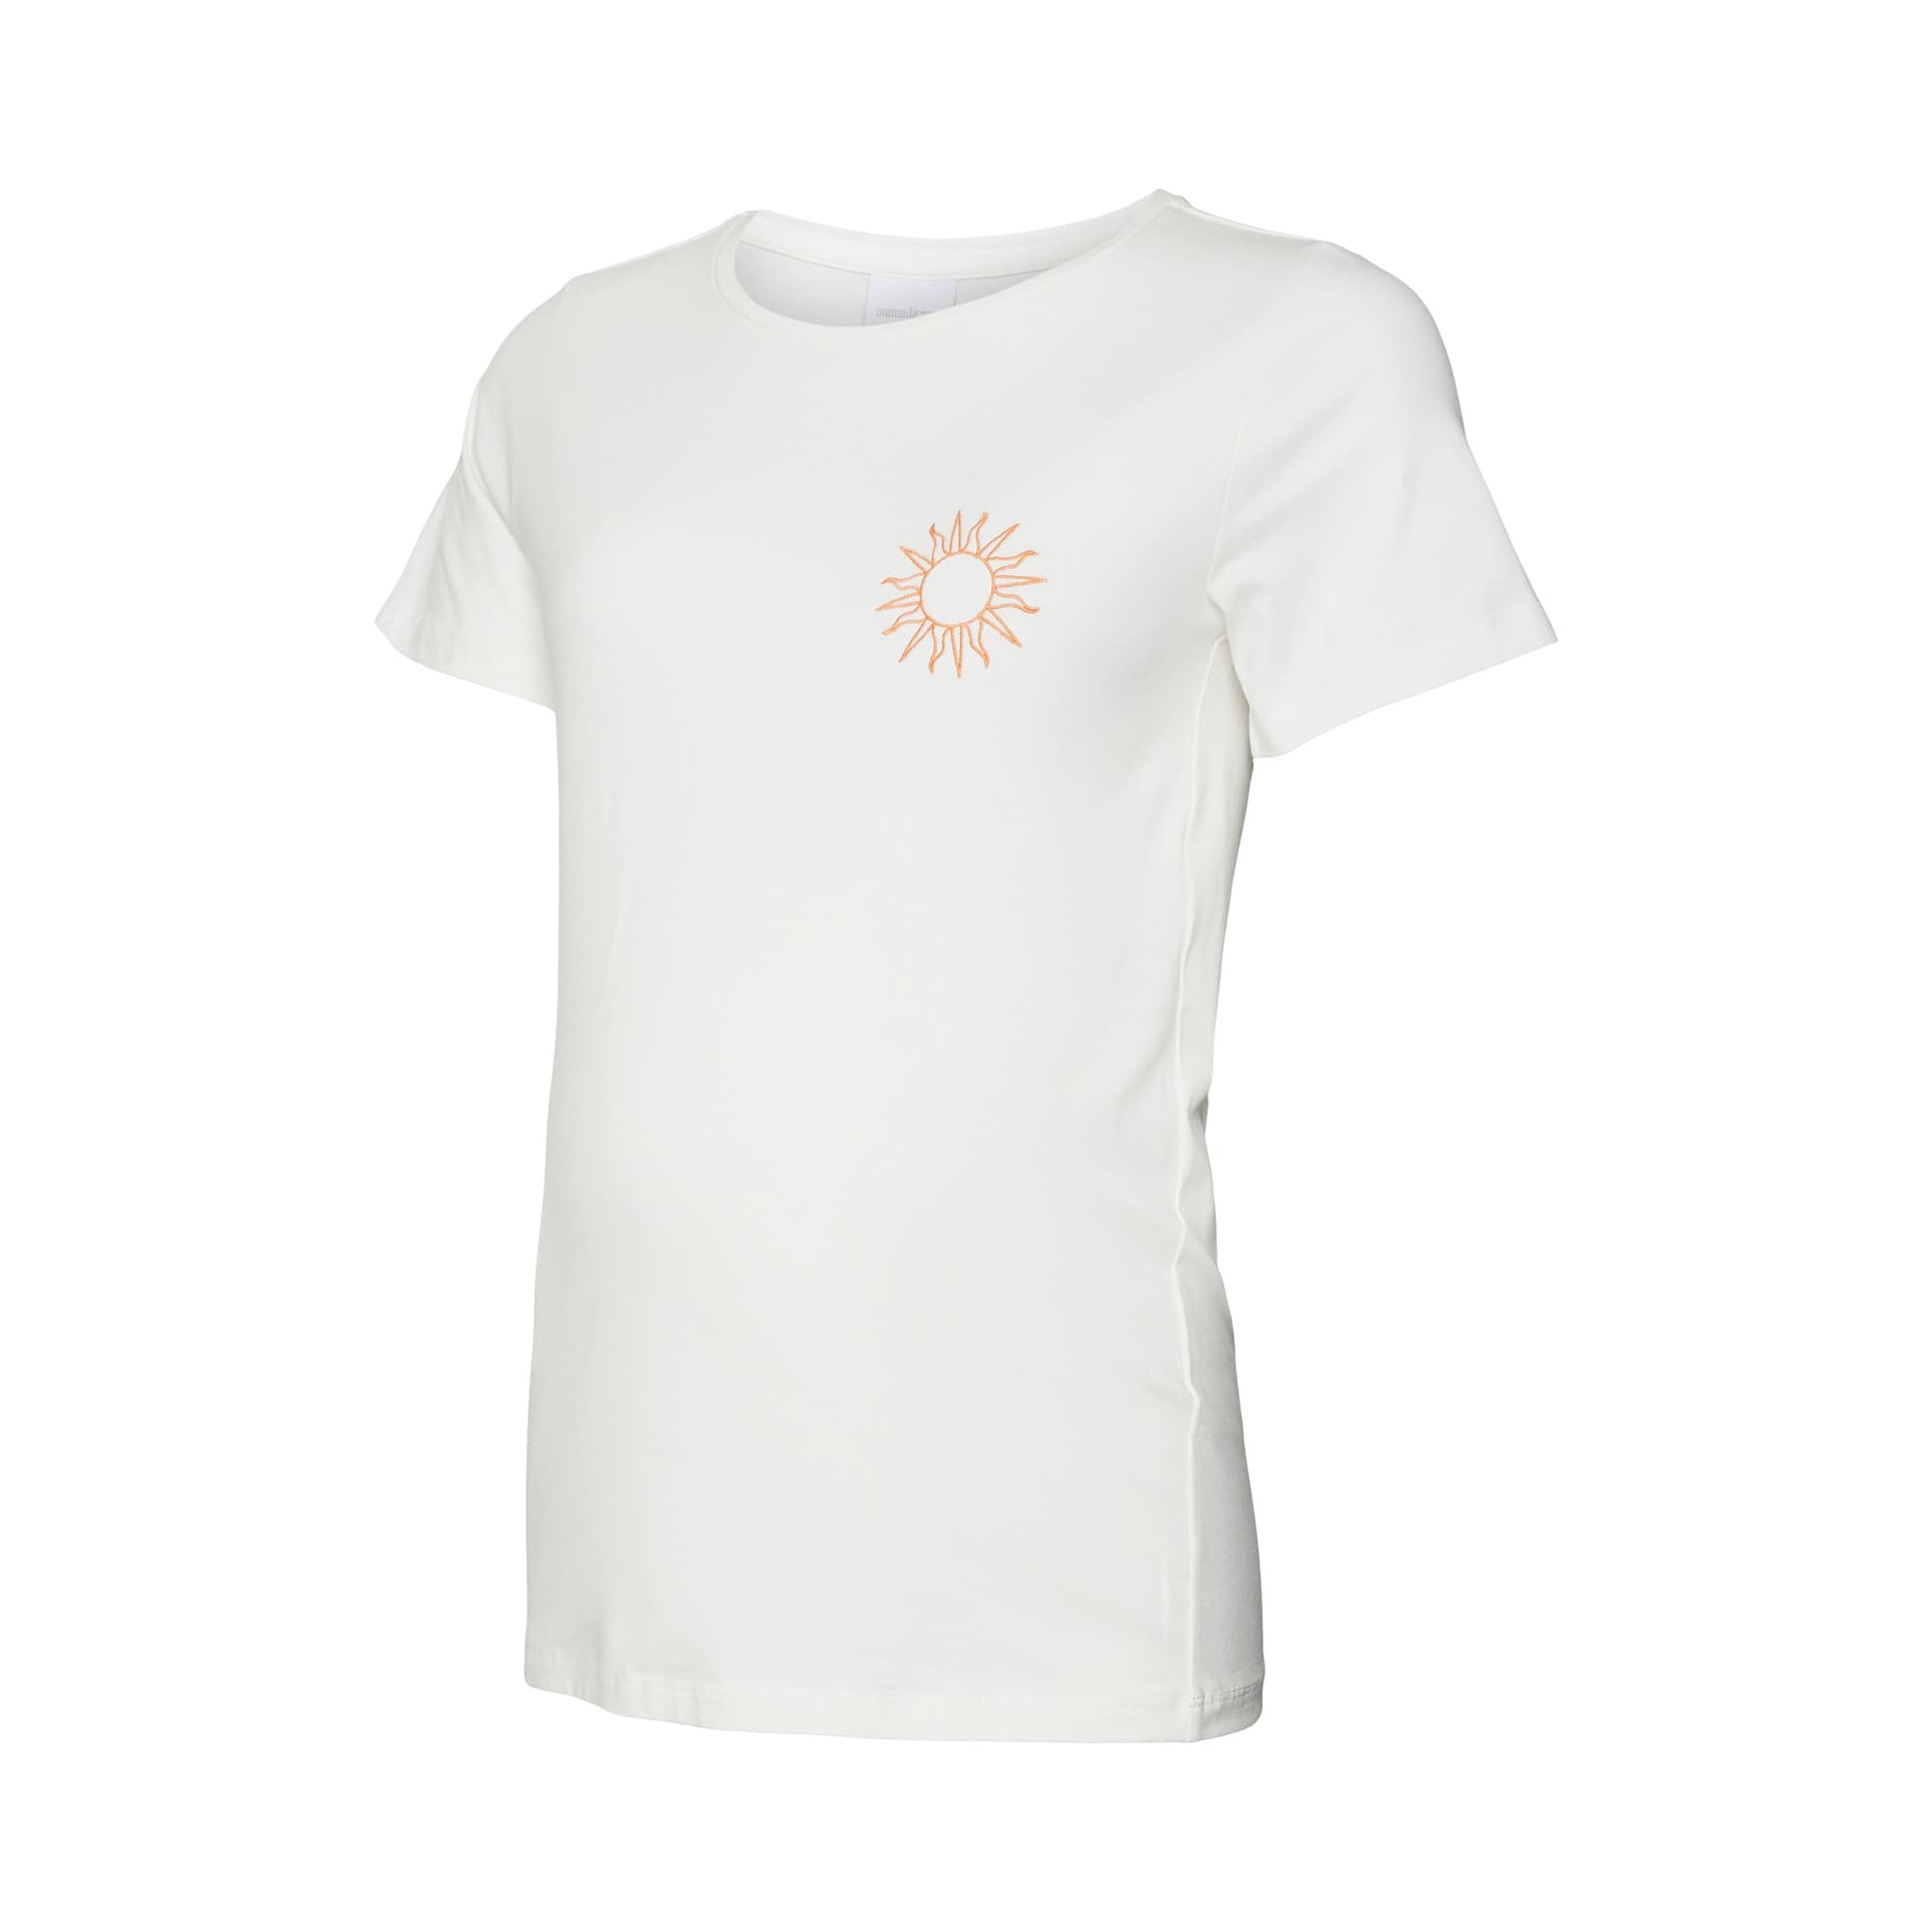 T-Shirt Sun Mamalicious Weiß M2000585643300 1